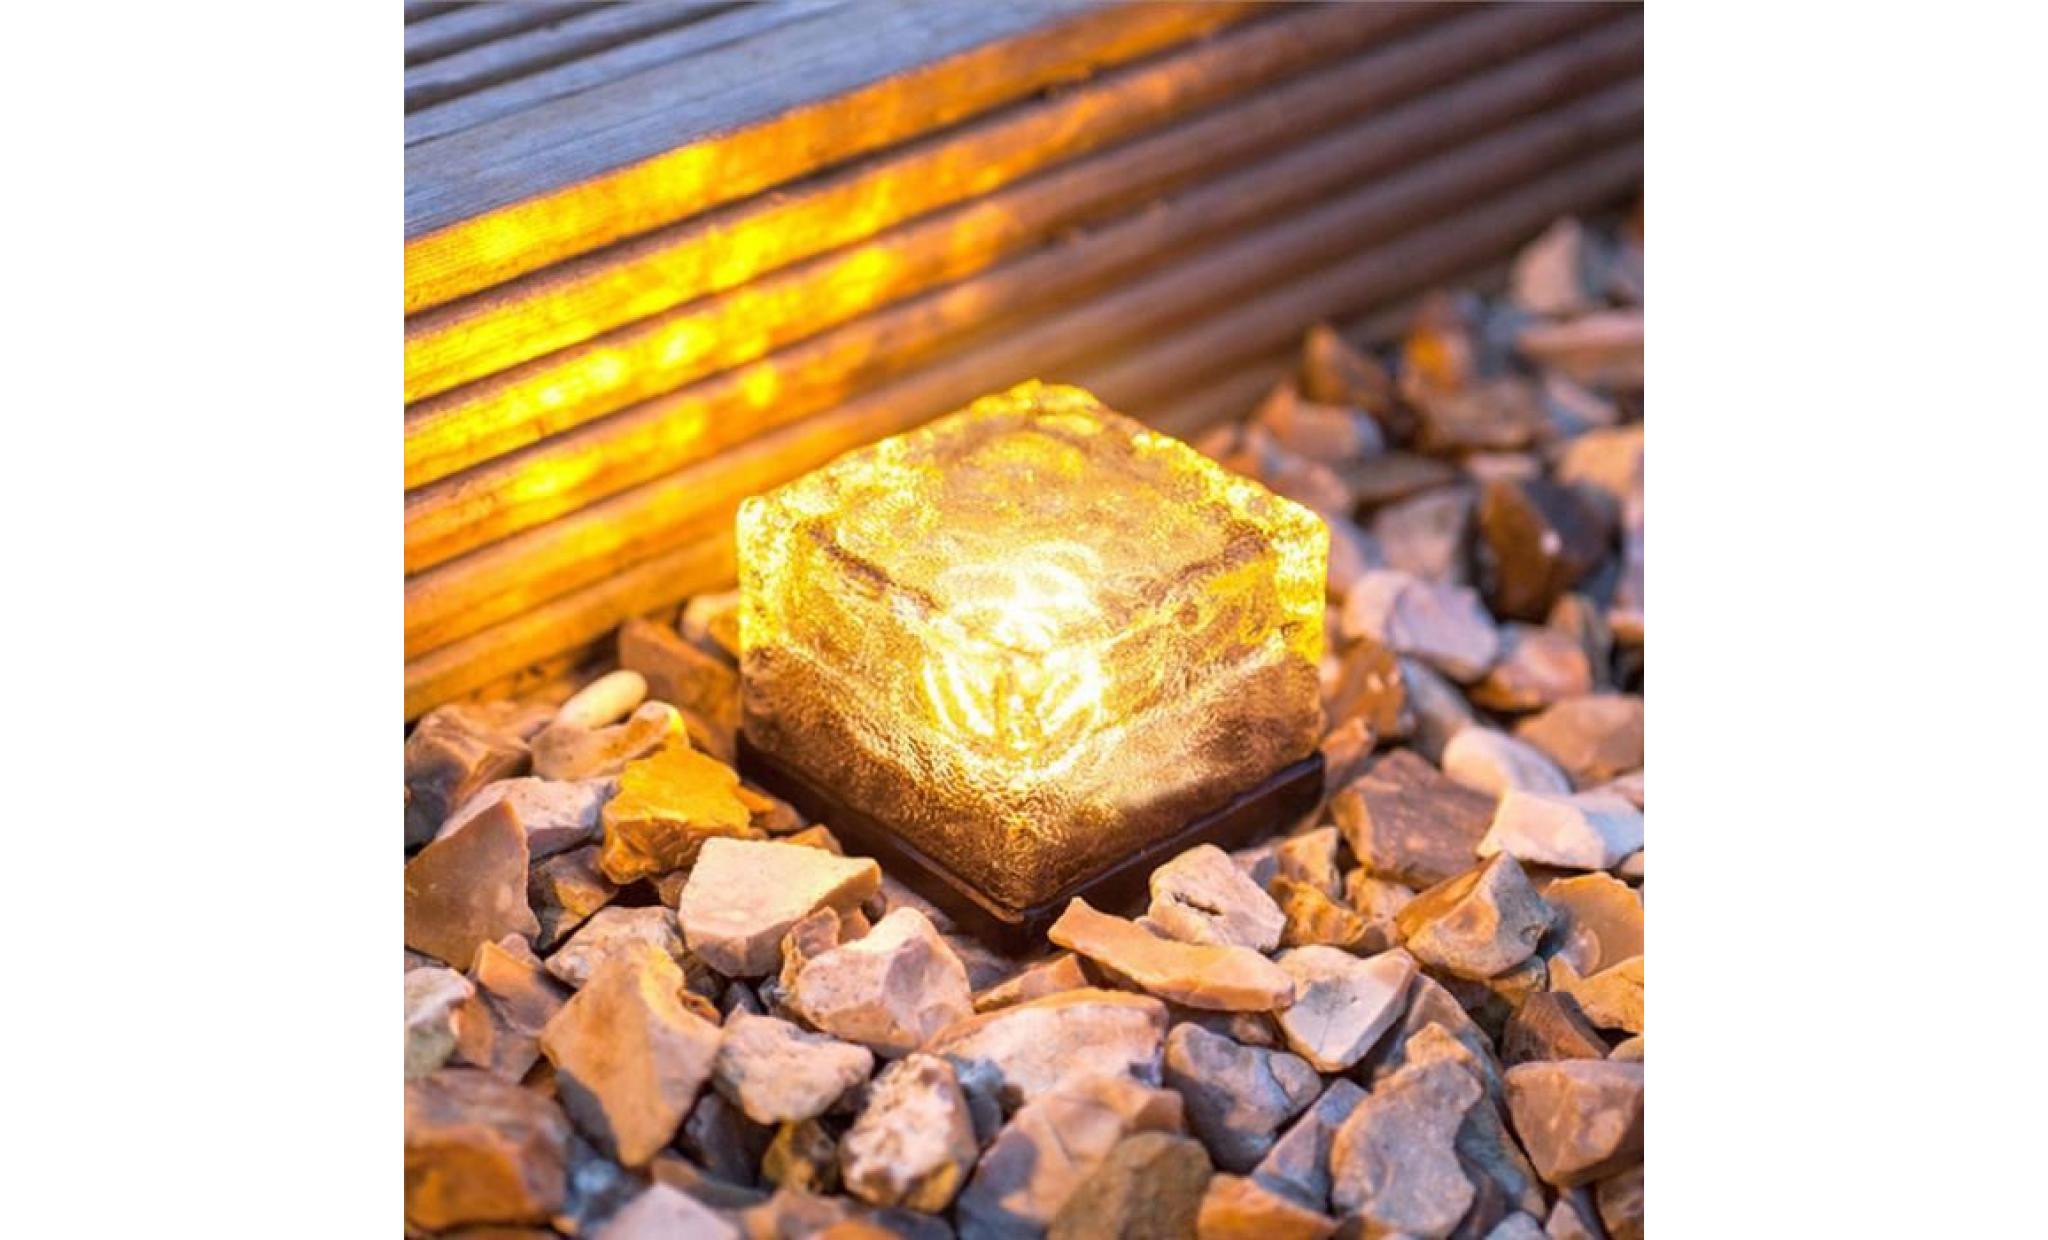 led énergie solaire change de couleur ice cube en cristal extérieur en verre brique hot lights anonywego880